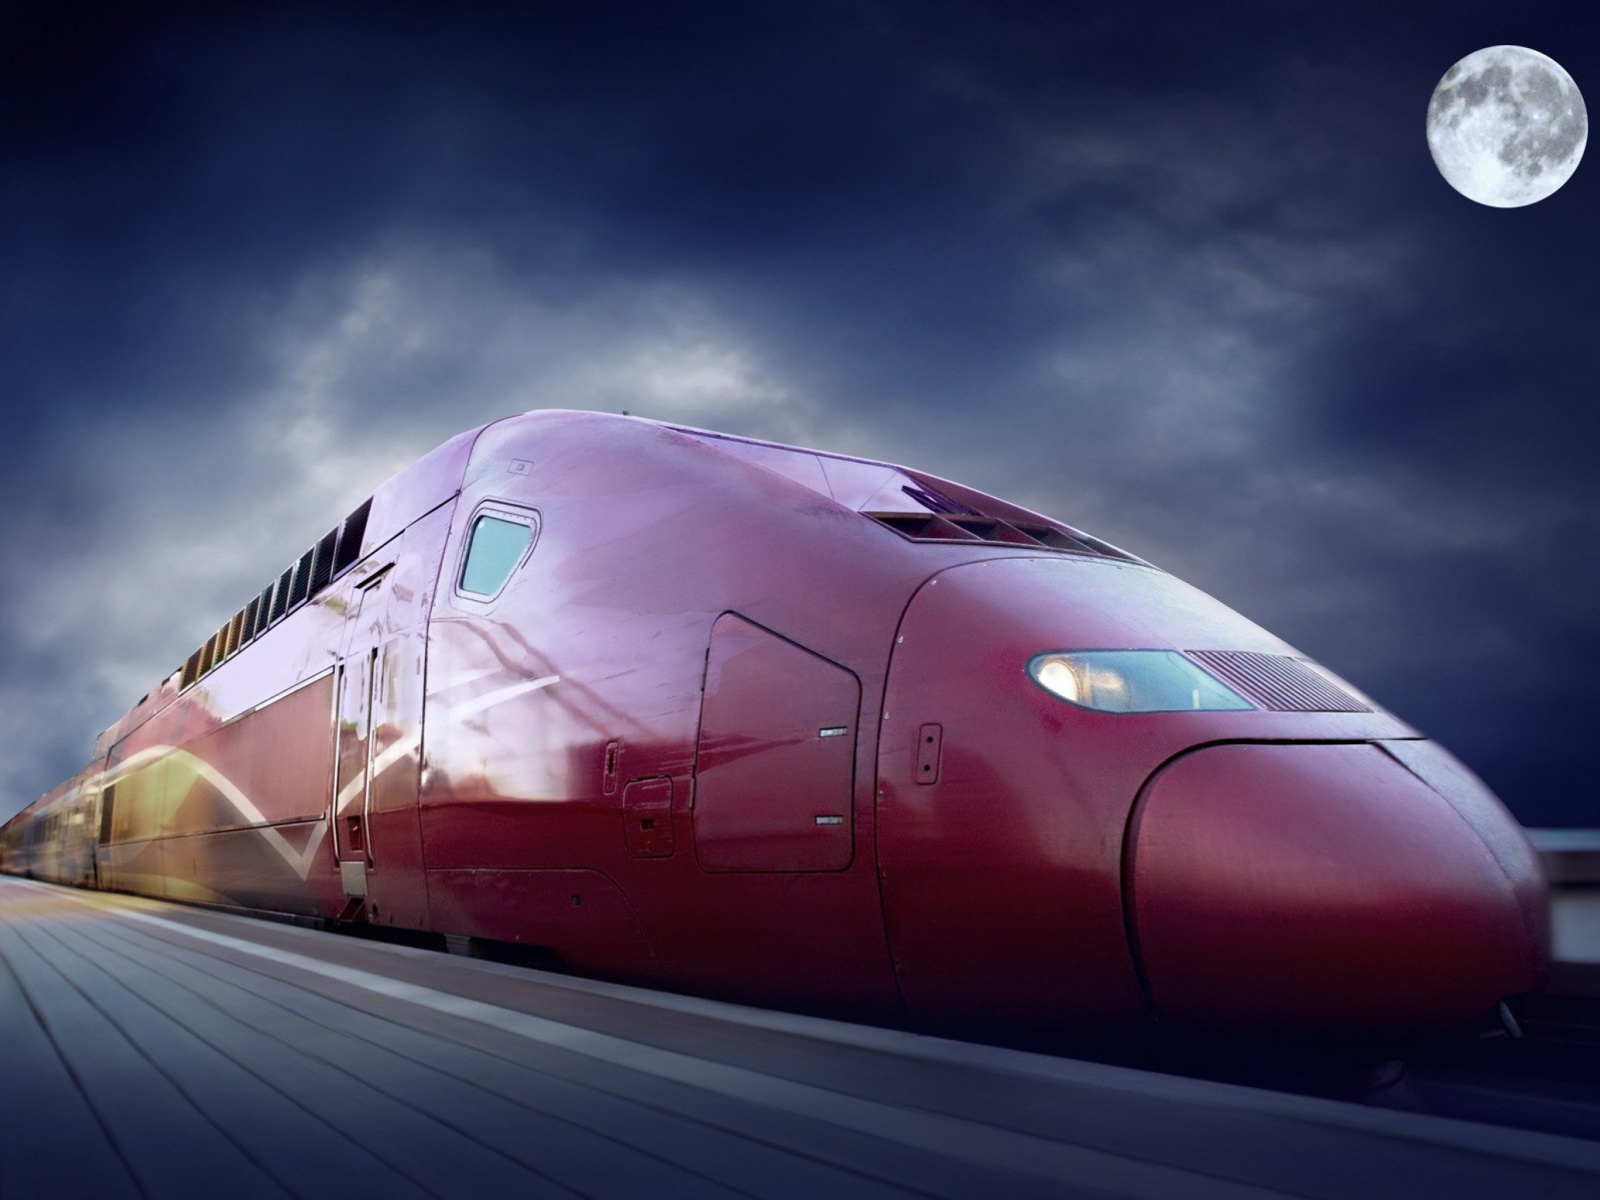 Обои Thalys train on high speed line 1600x1200